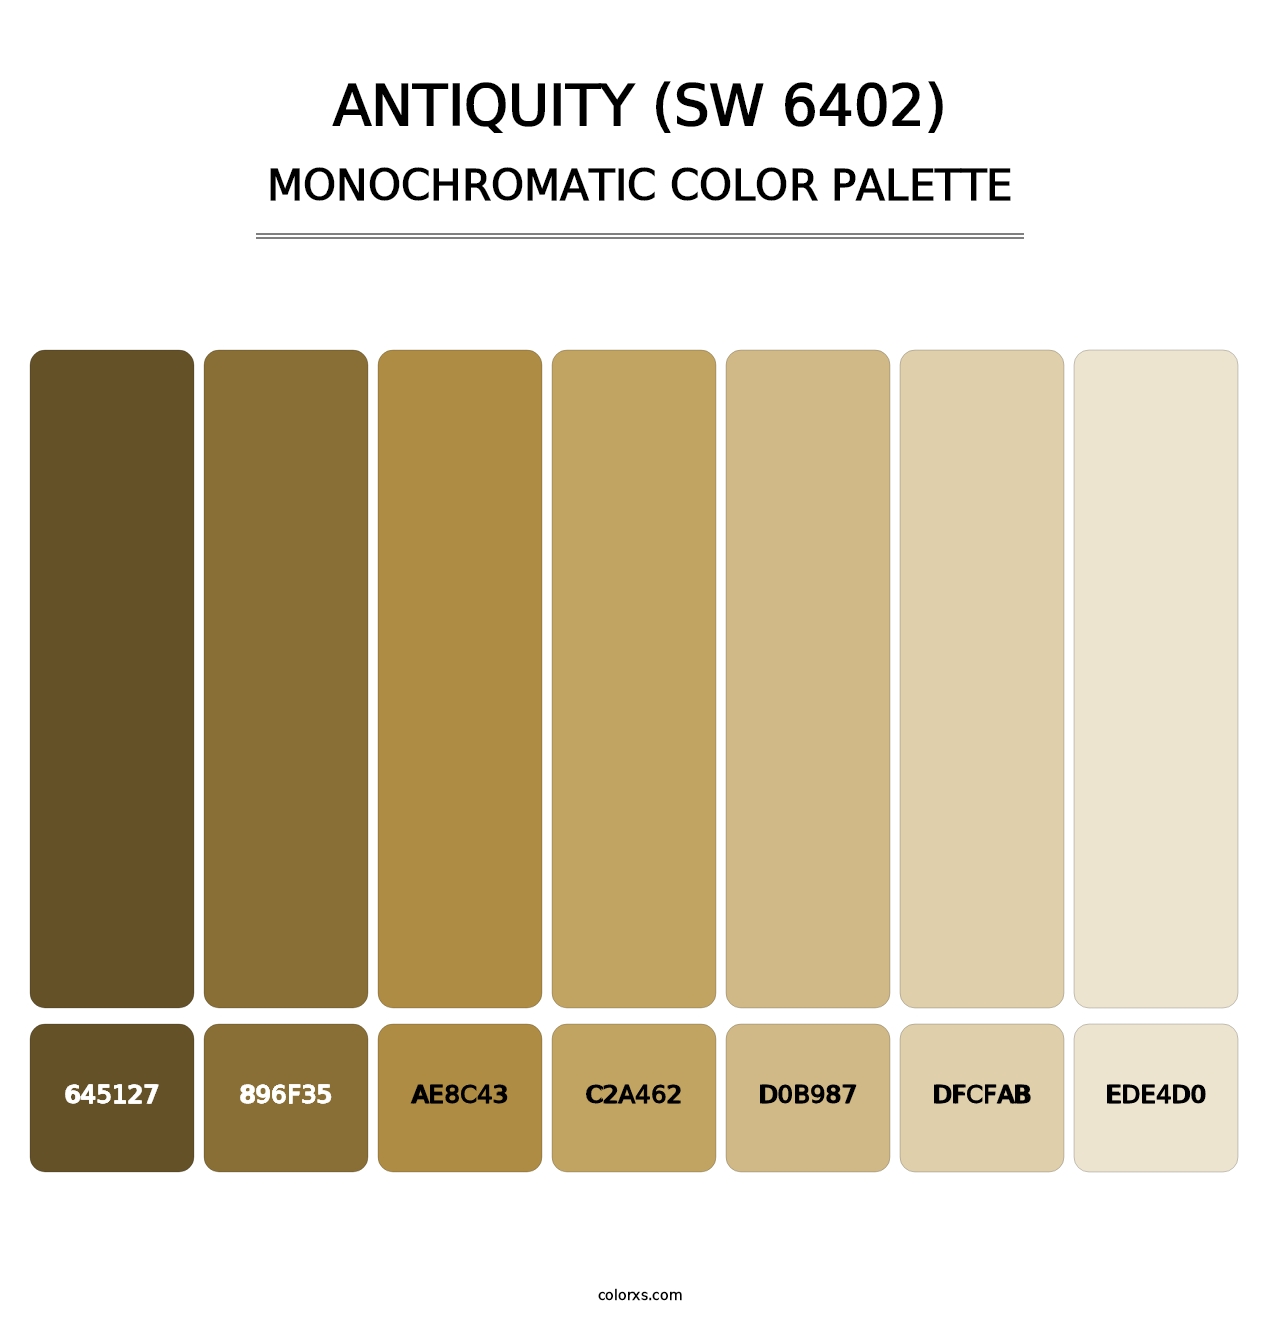 Antiquity (SW 6402) - Monochromatic Color Palette